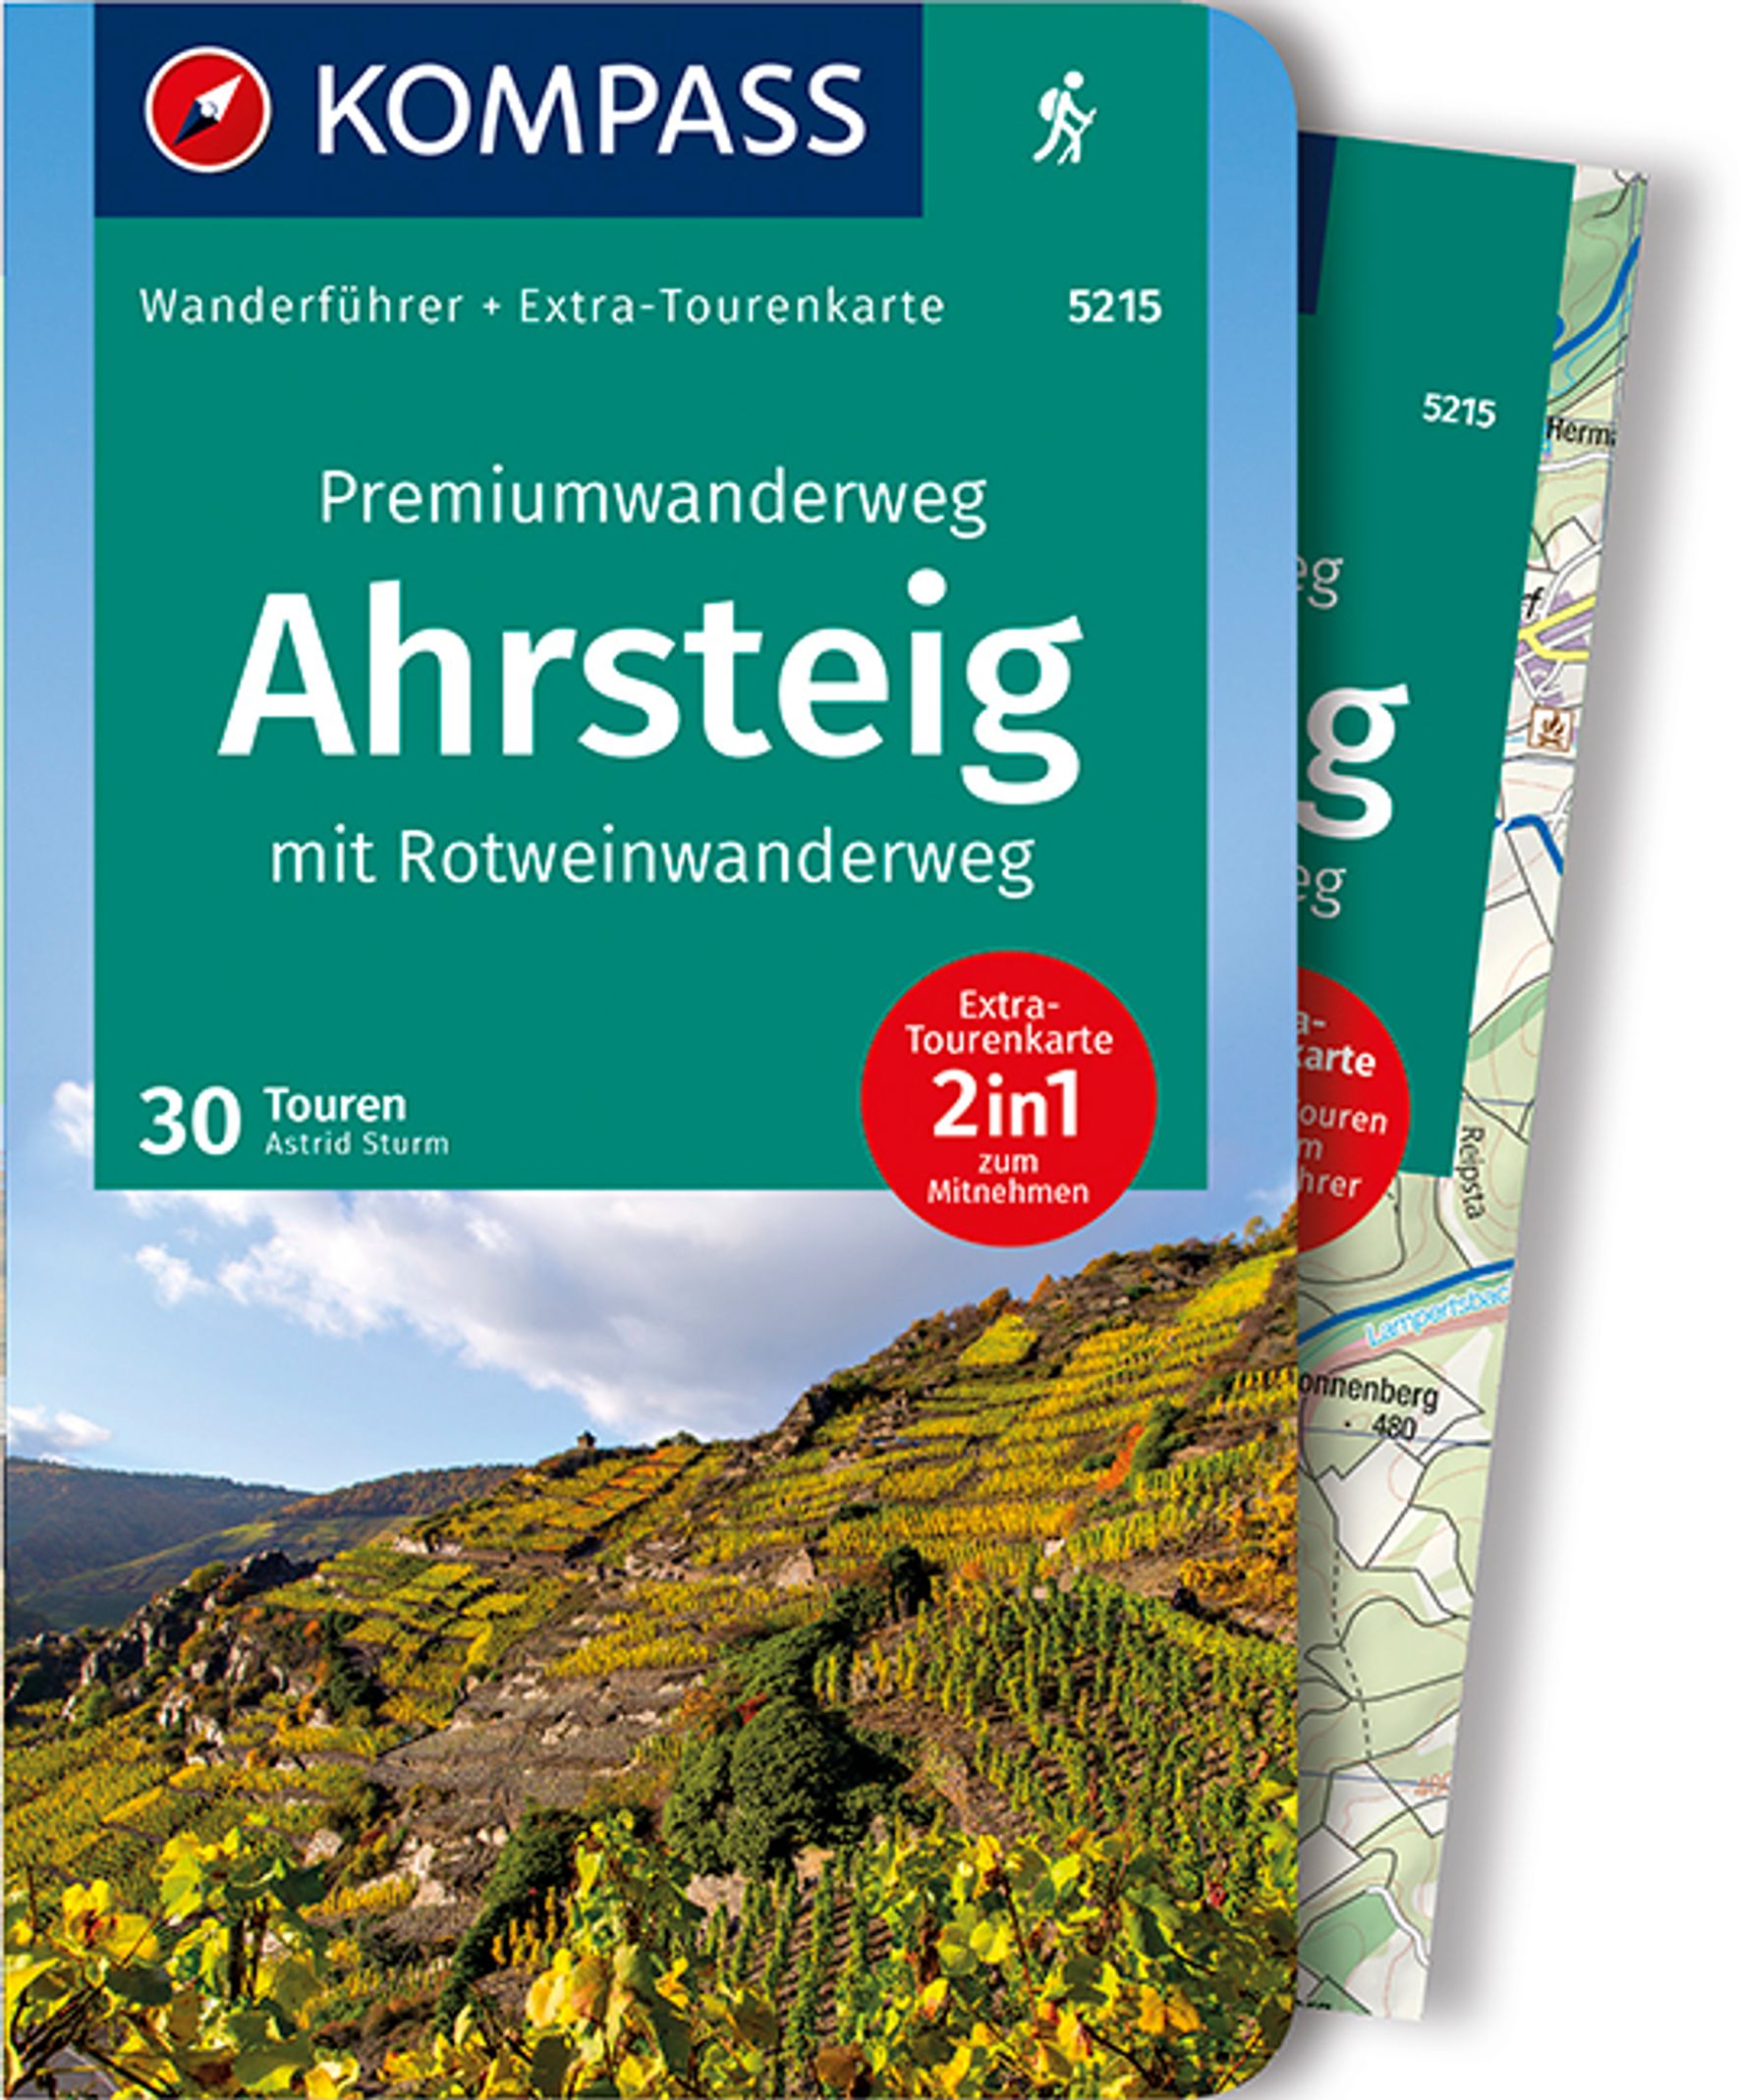 MAIRDUMONT Premiumwanderweg Ahrsteig mit Rotweinwanderweg, 30 Touren/Etappen mit Extra-Tourenkarte